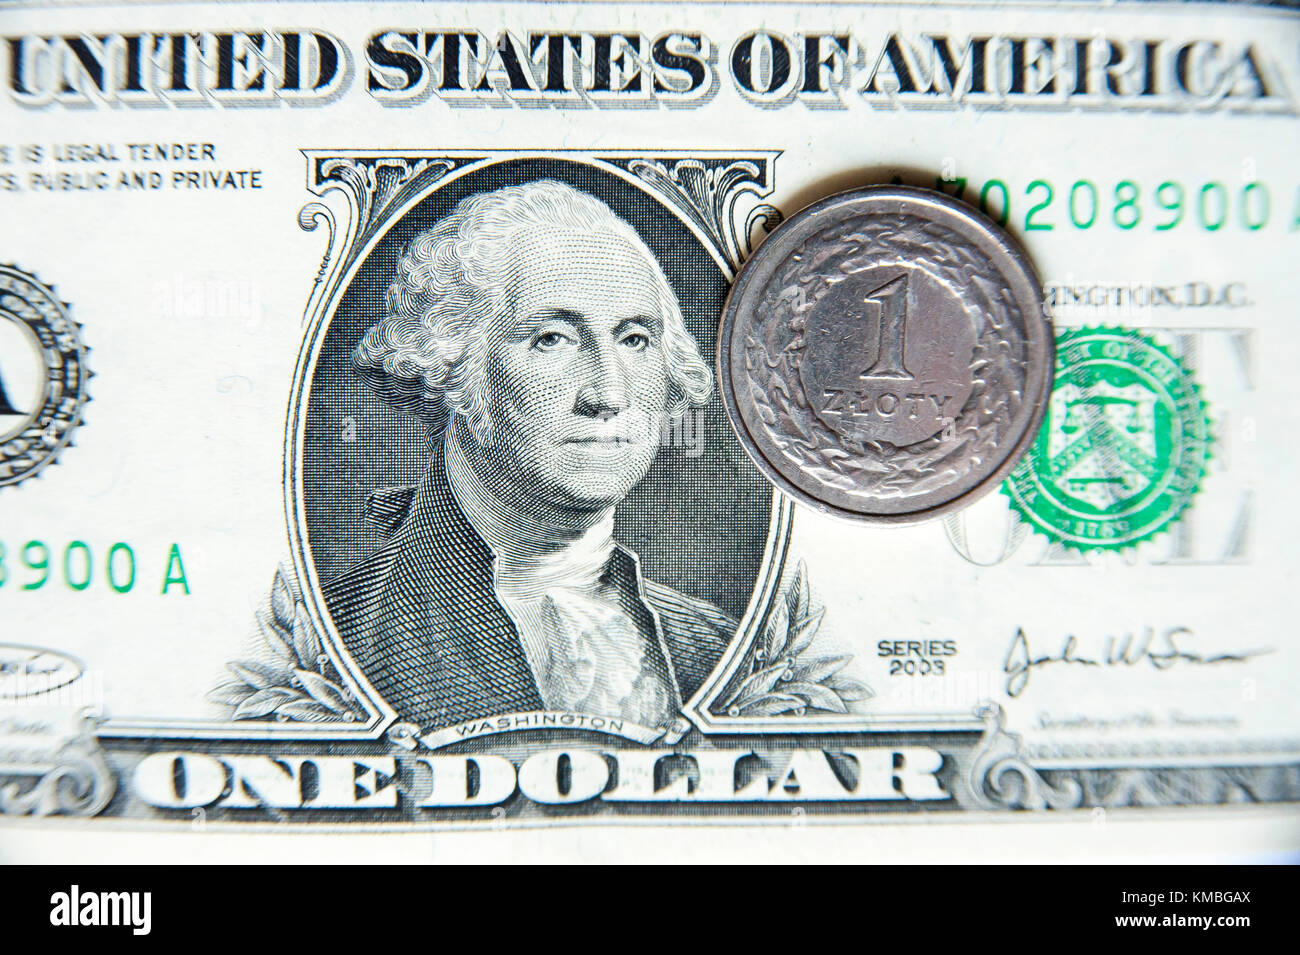 Die Vereinigten Staaten one-dollar Bill (1 $) mit George Washington und ein polnischer Zloty Münze © wojciech Strozyk/Alamy Stock Foto Stockfoto